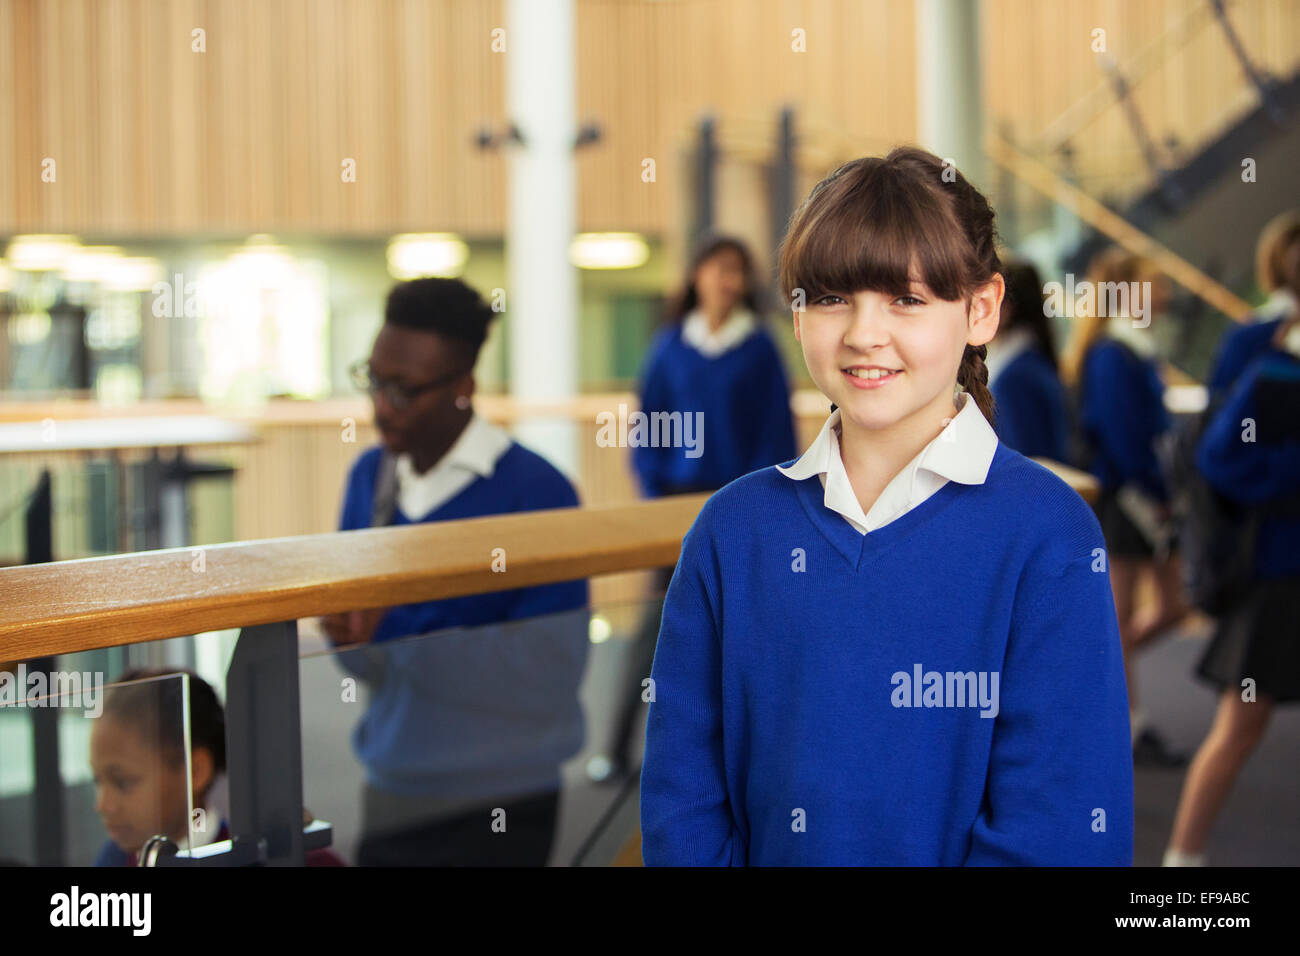 Portrait of smiling elementary school girl wearing blue school uniform standing in school corridor Stock Photo